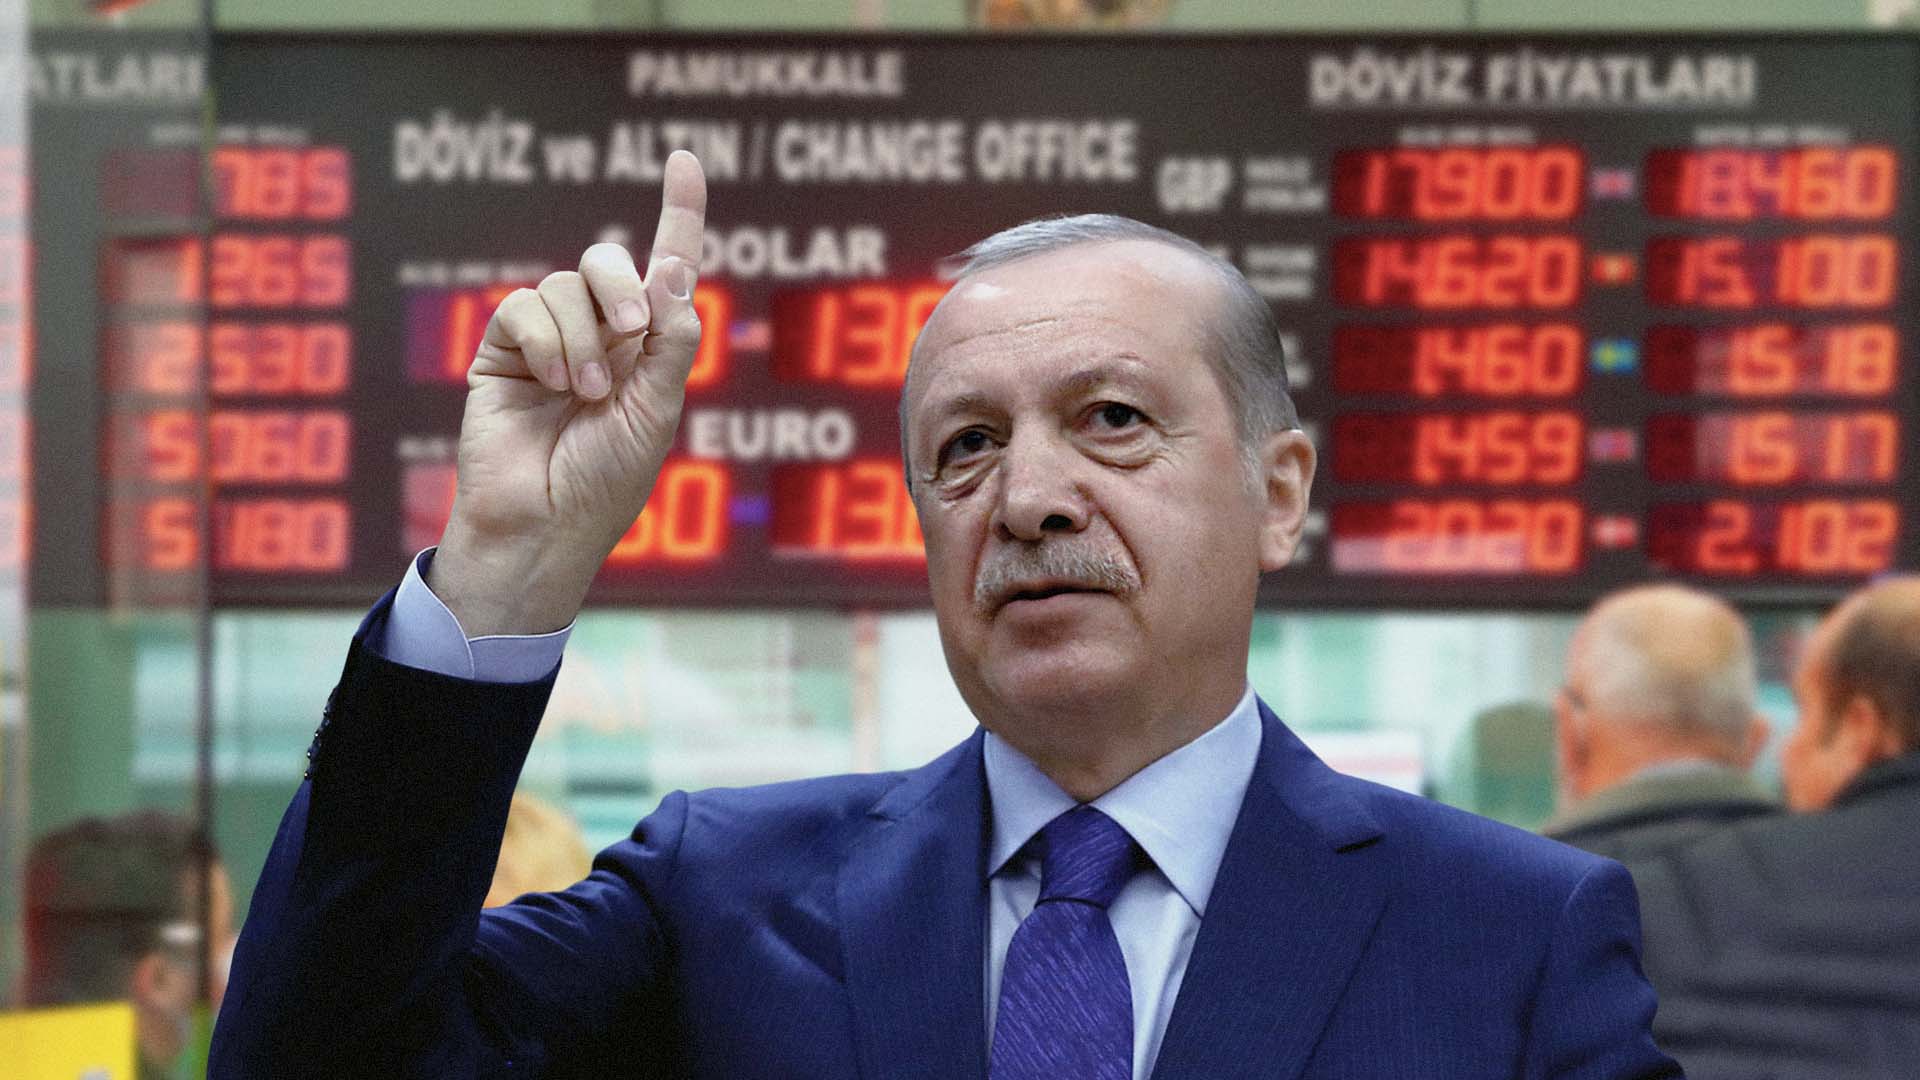 صورة إردوغان يطبق نظرية الله جاب الله خد الله عليه العوض الاقتصادية في تركيا